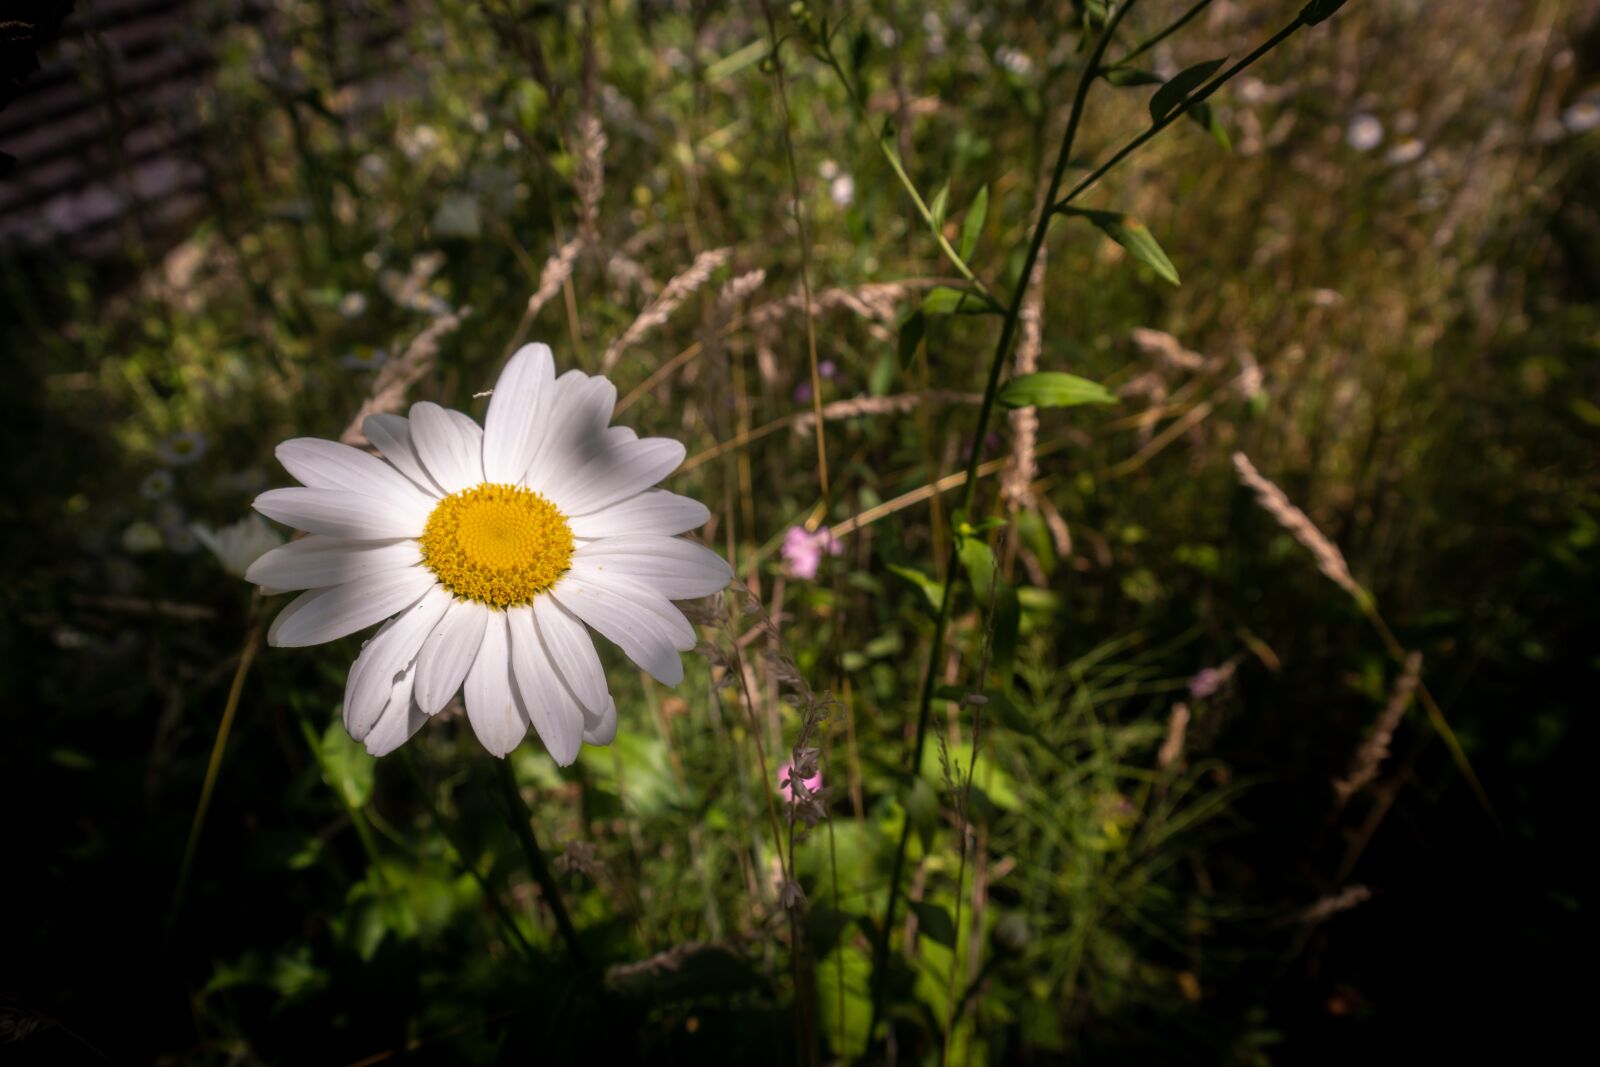 Samsung NX 18-55mm F3.5-5.6 OIS sample photo. Flower, daisy, summer photography